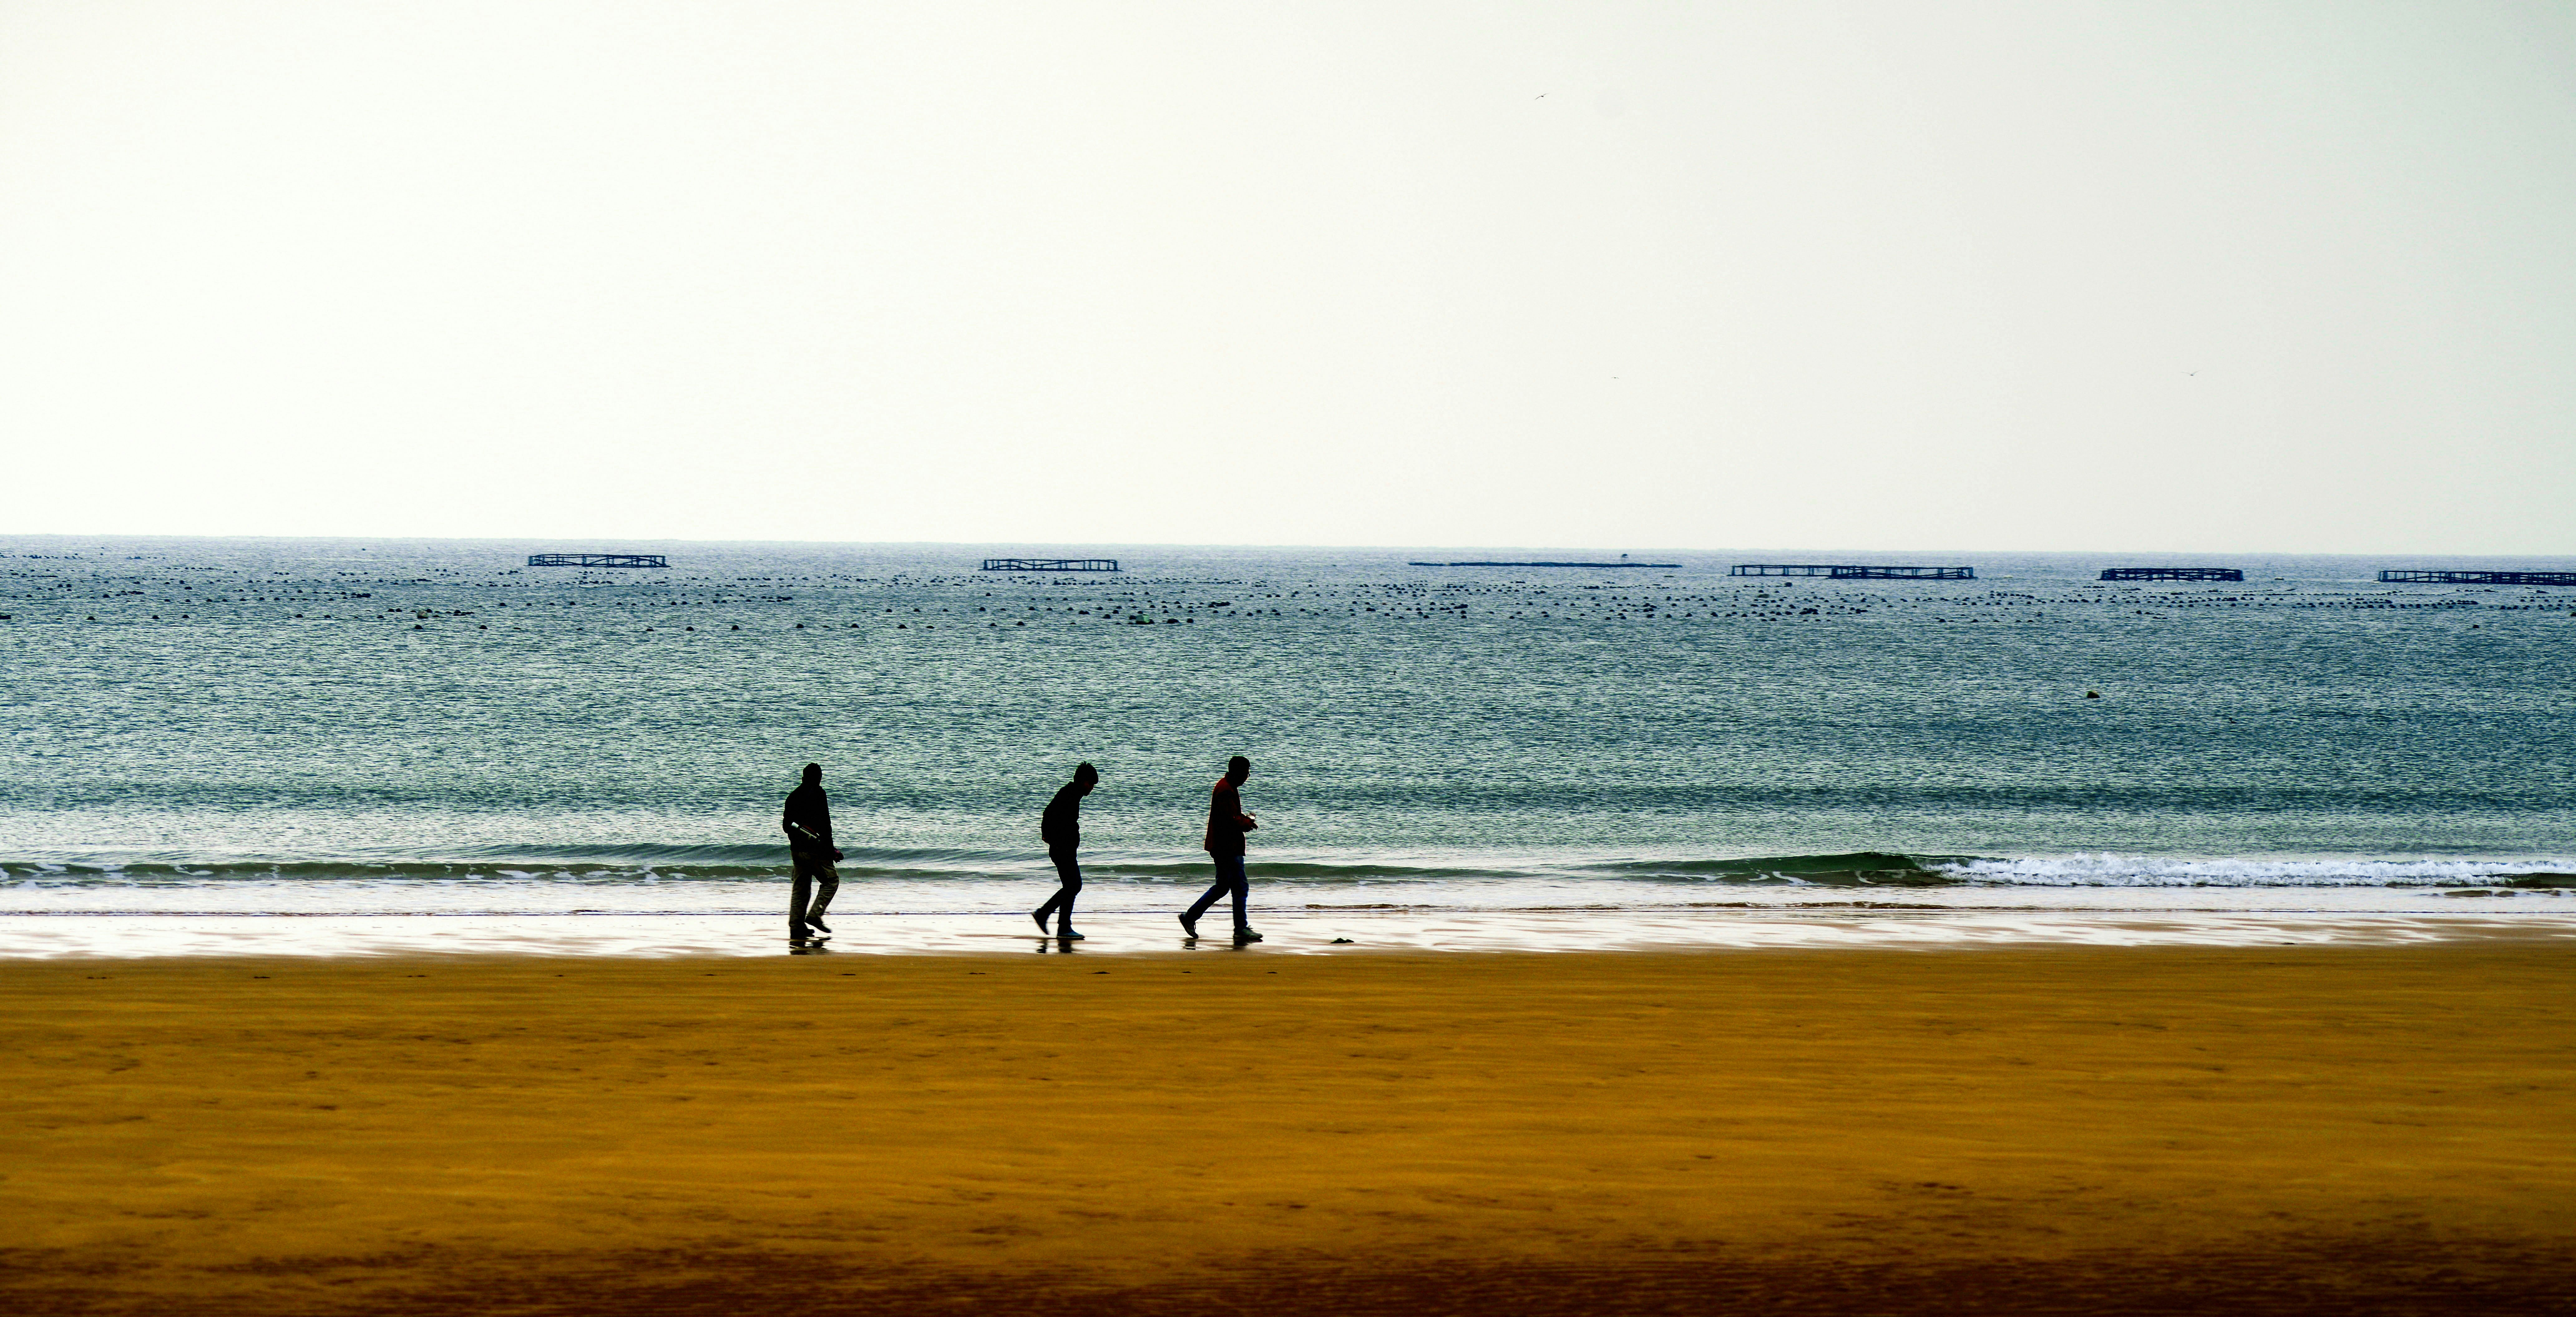 3 people walking on beach during daytime